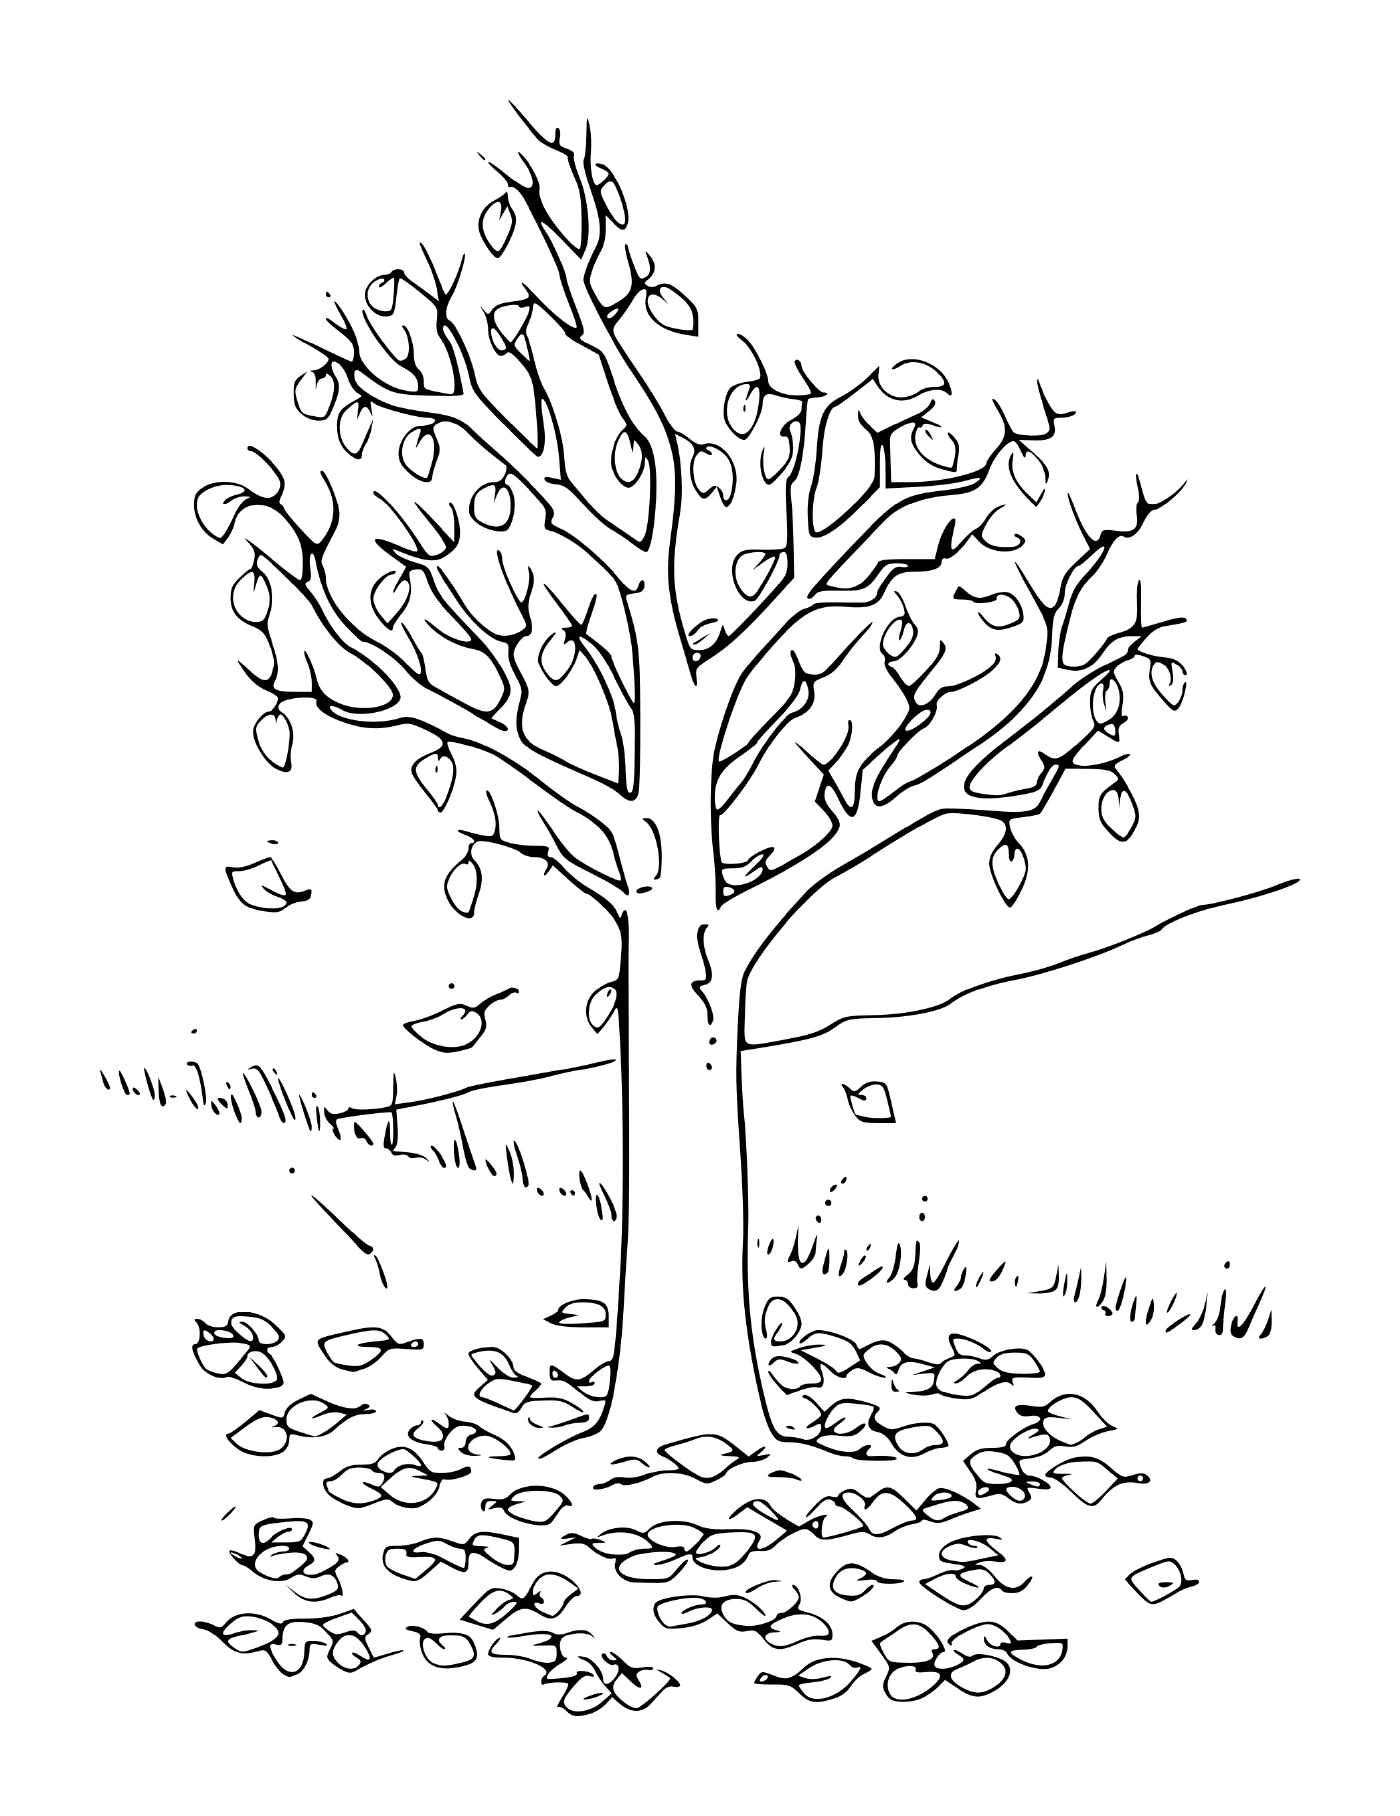  Un albero con le foglie 